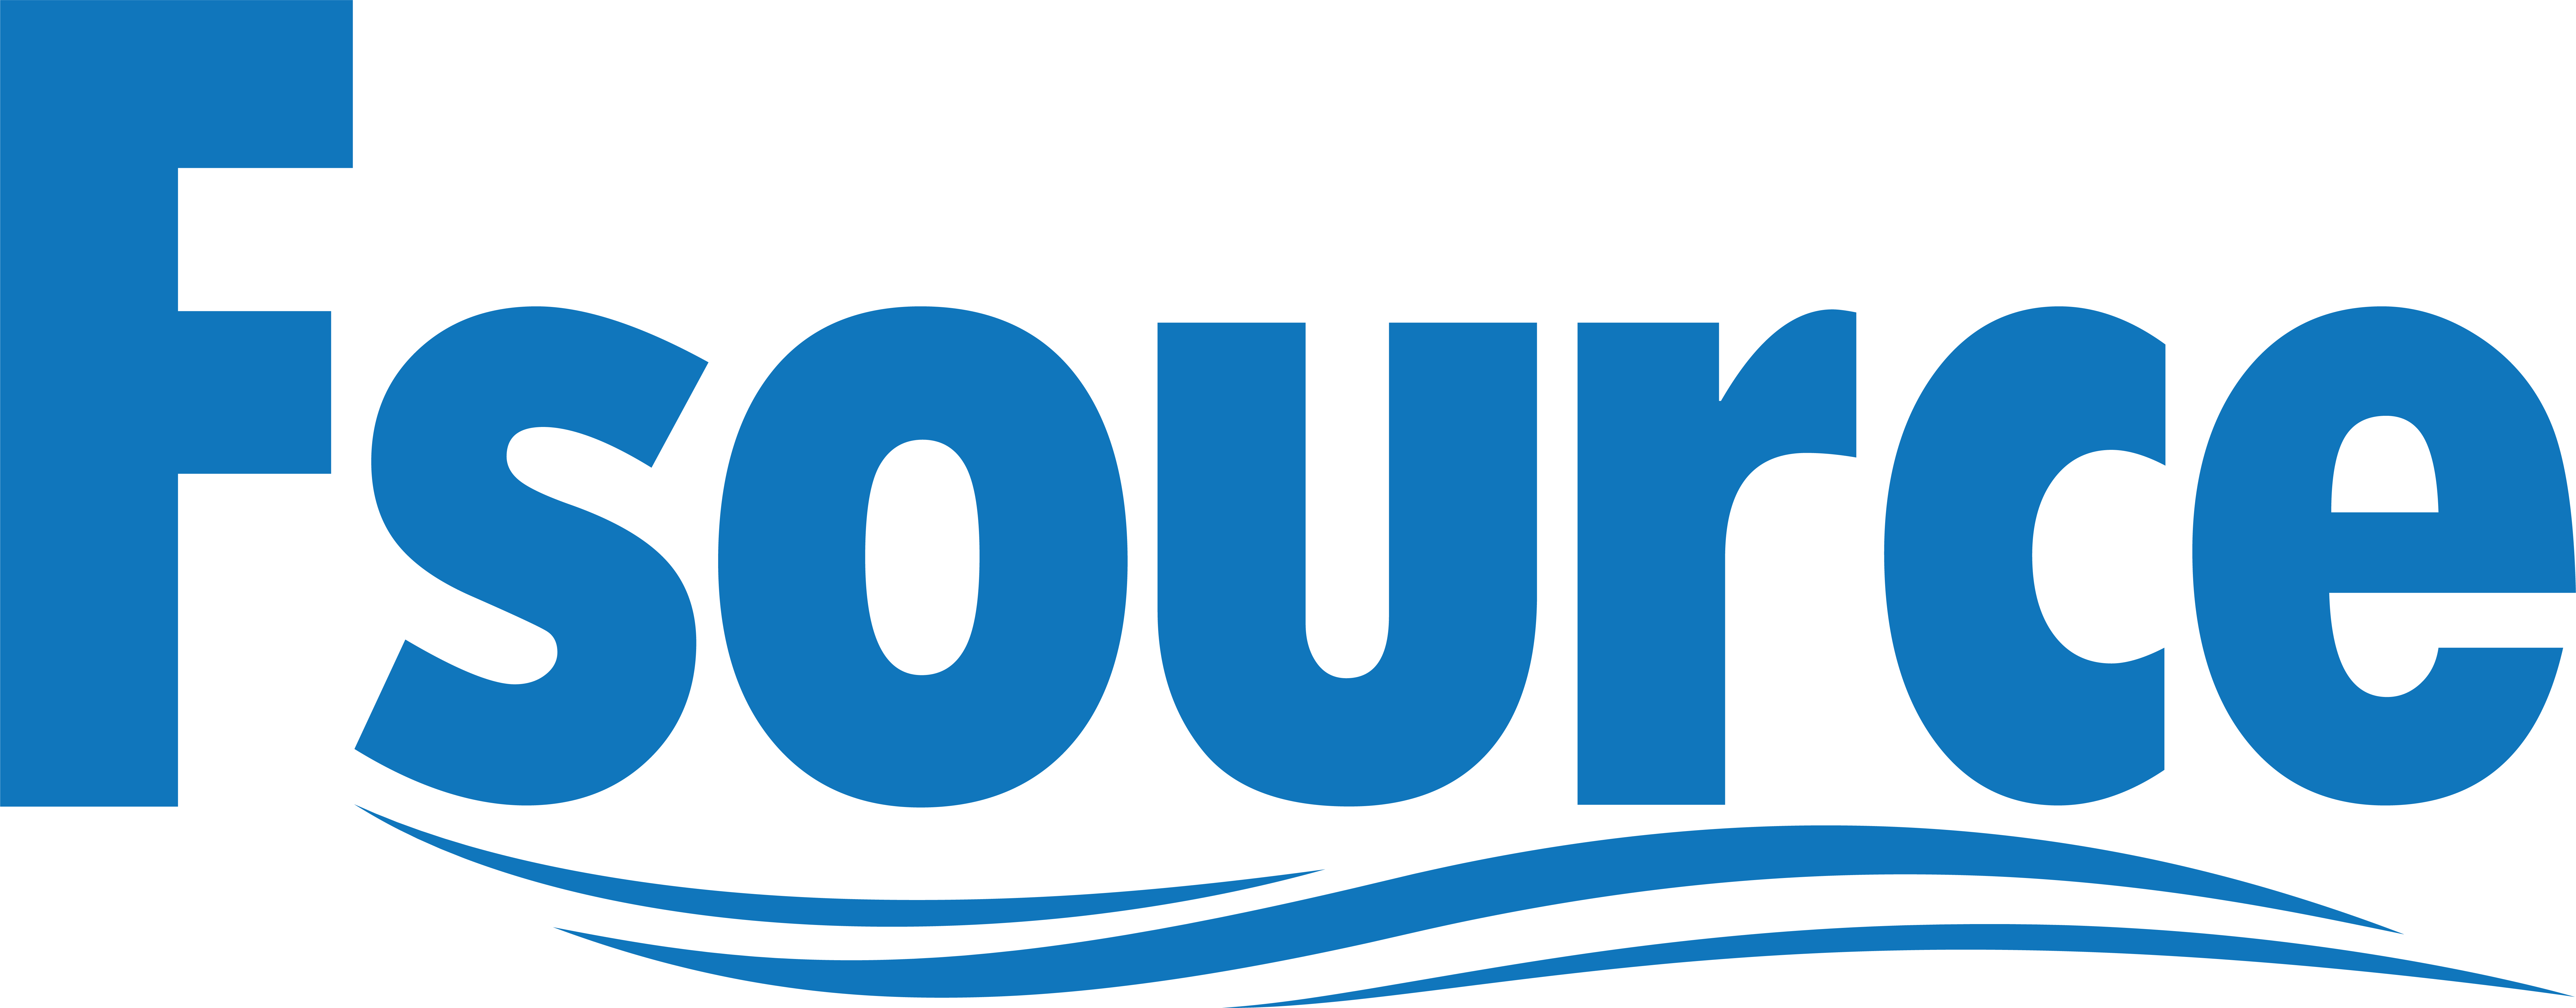 Logo CÔNG TY TNHH FSOURCE VIỆT NAM